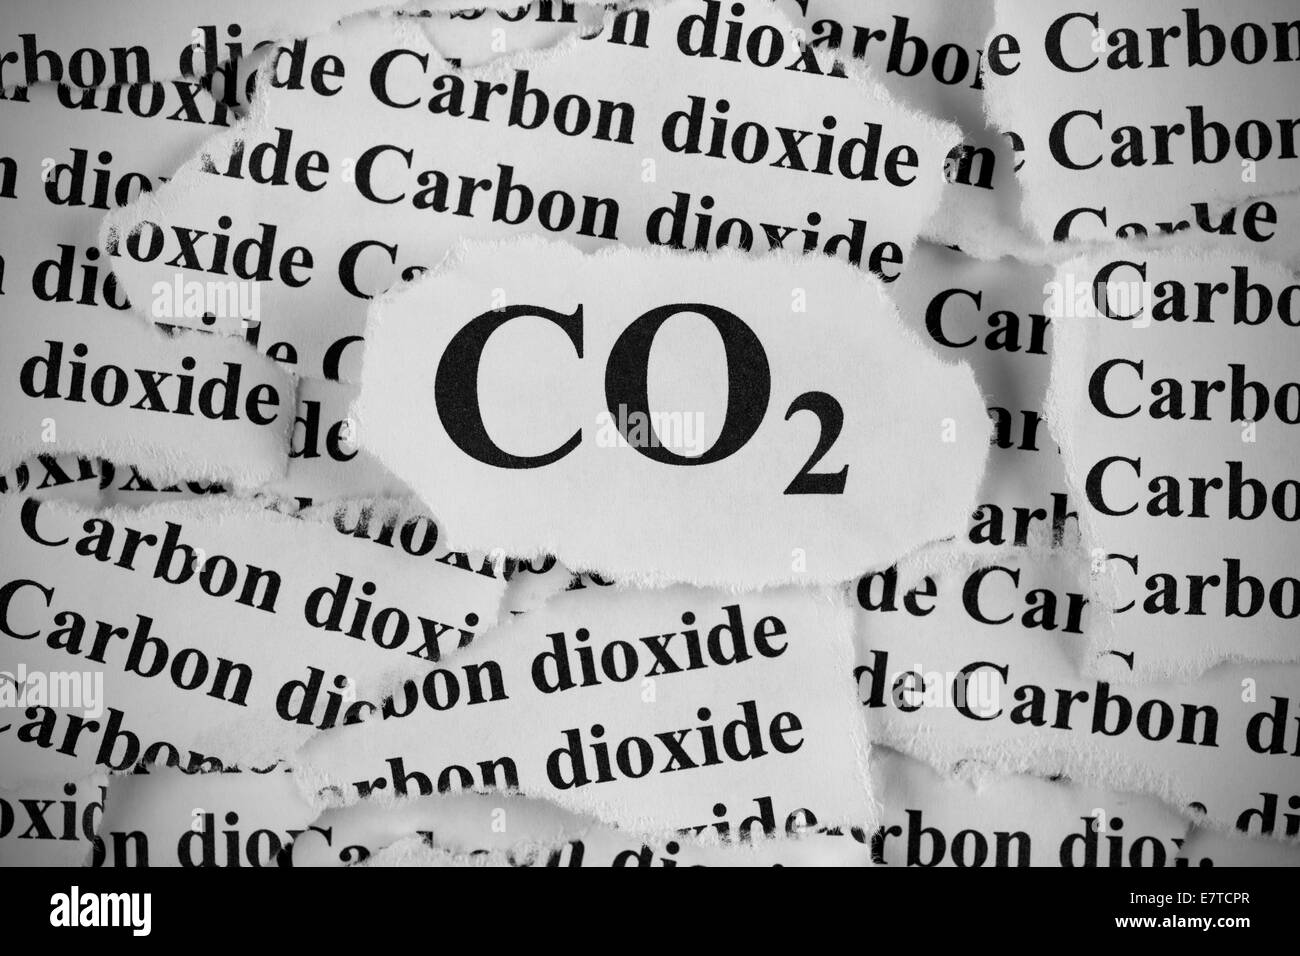 Il biossido di carbonio. Pezzi di carta strappati con le parole "CO2" e "Biossido di carbonio". In bianco e nero. Close-up. Foto Stock